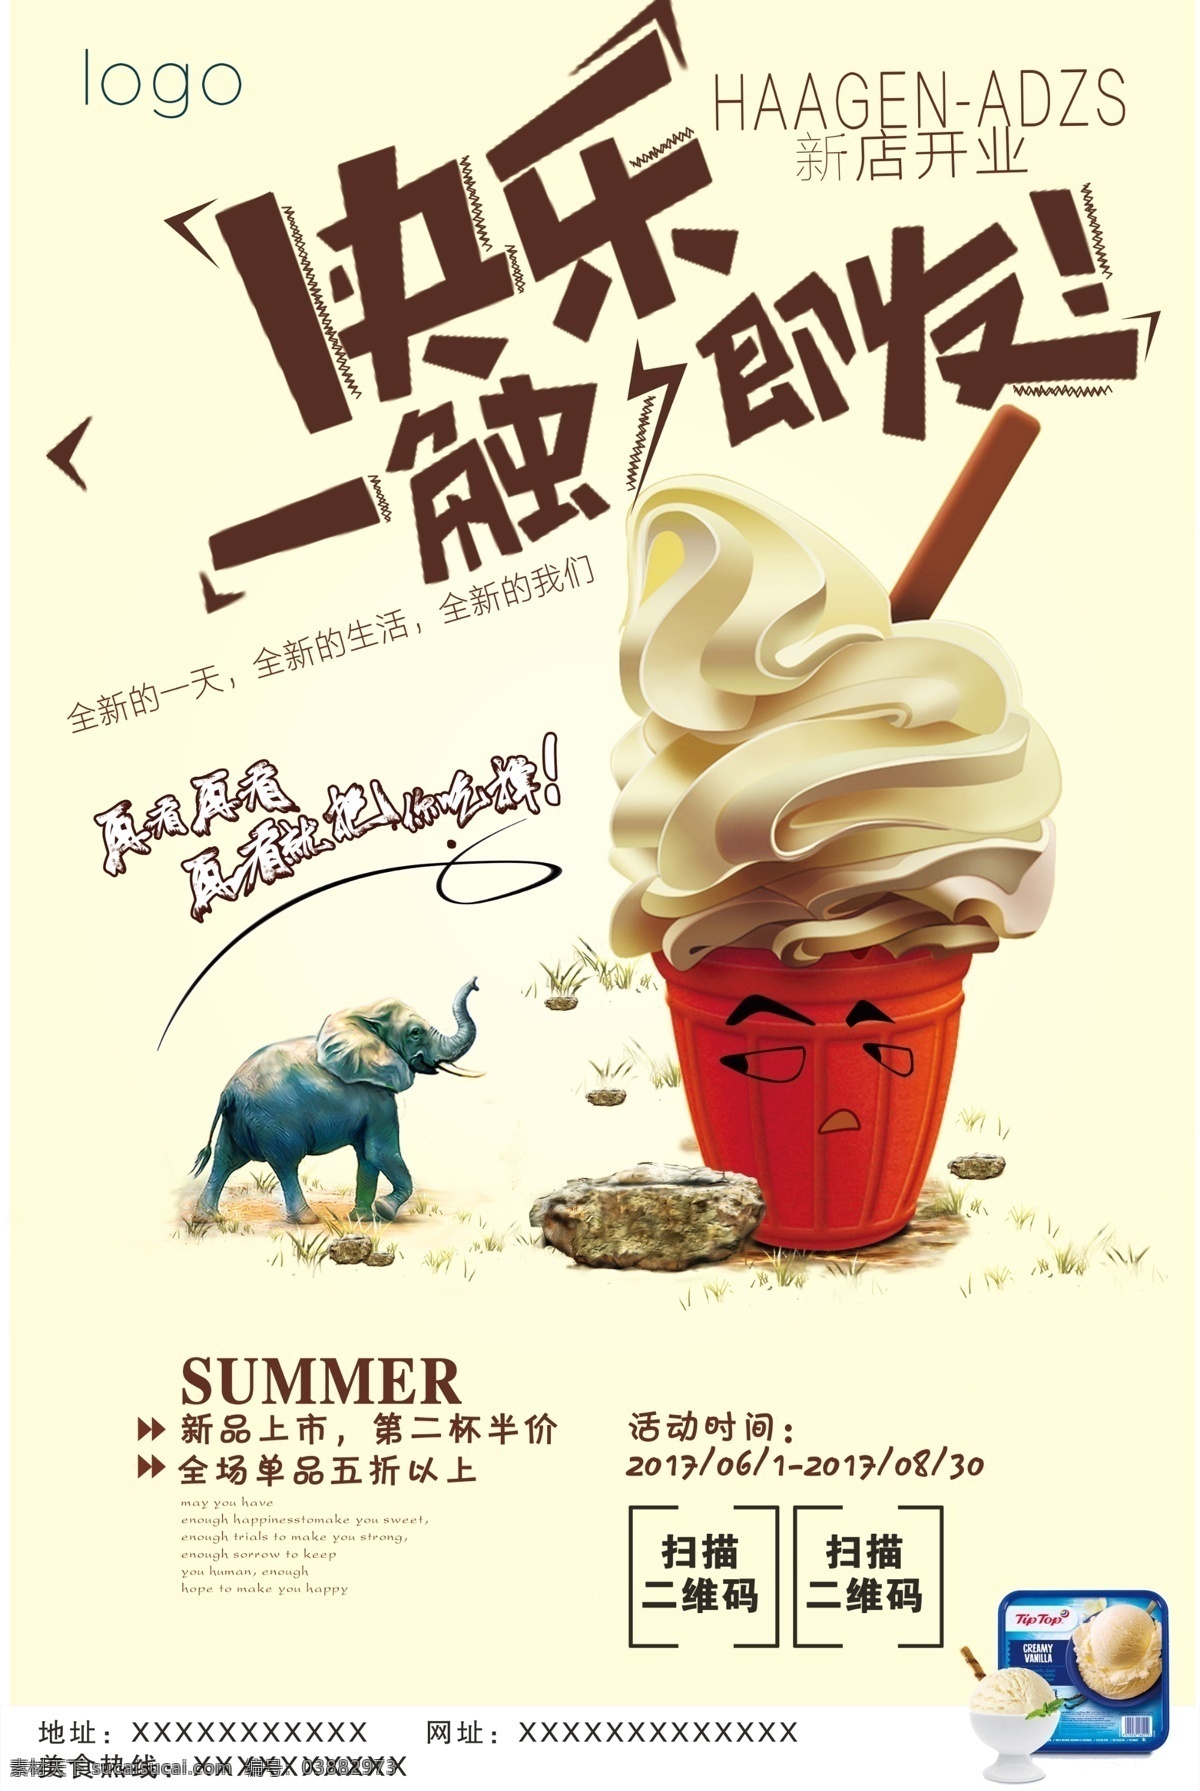 冰淇淋海报 冰淇淋 海报 黄色 大象 石头 新店开业